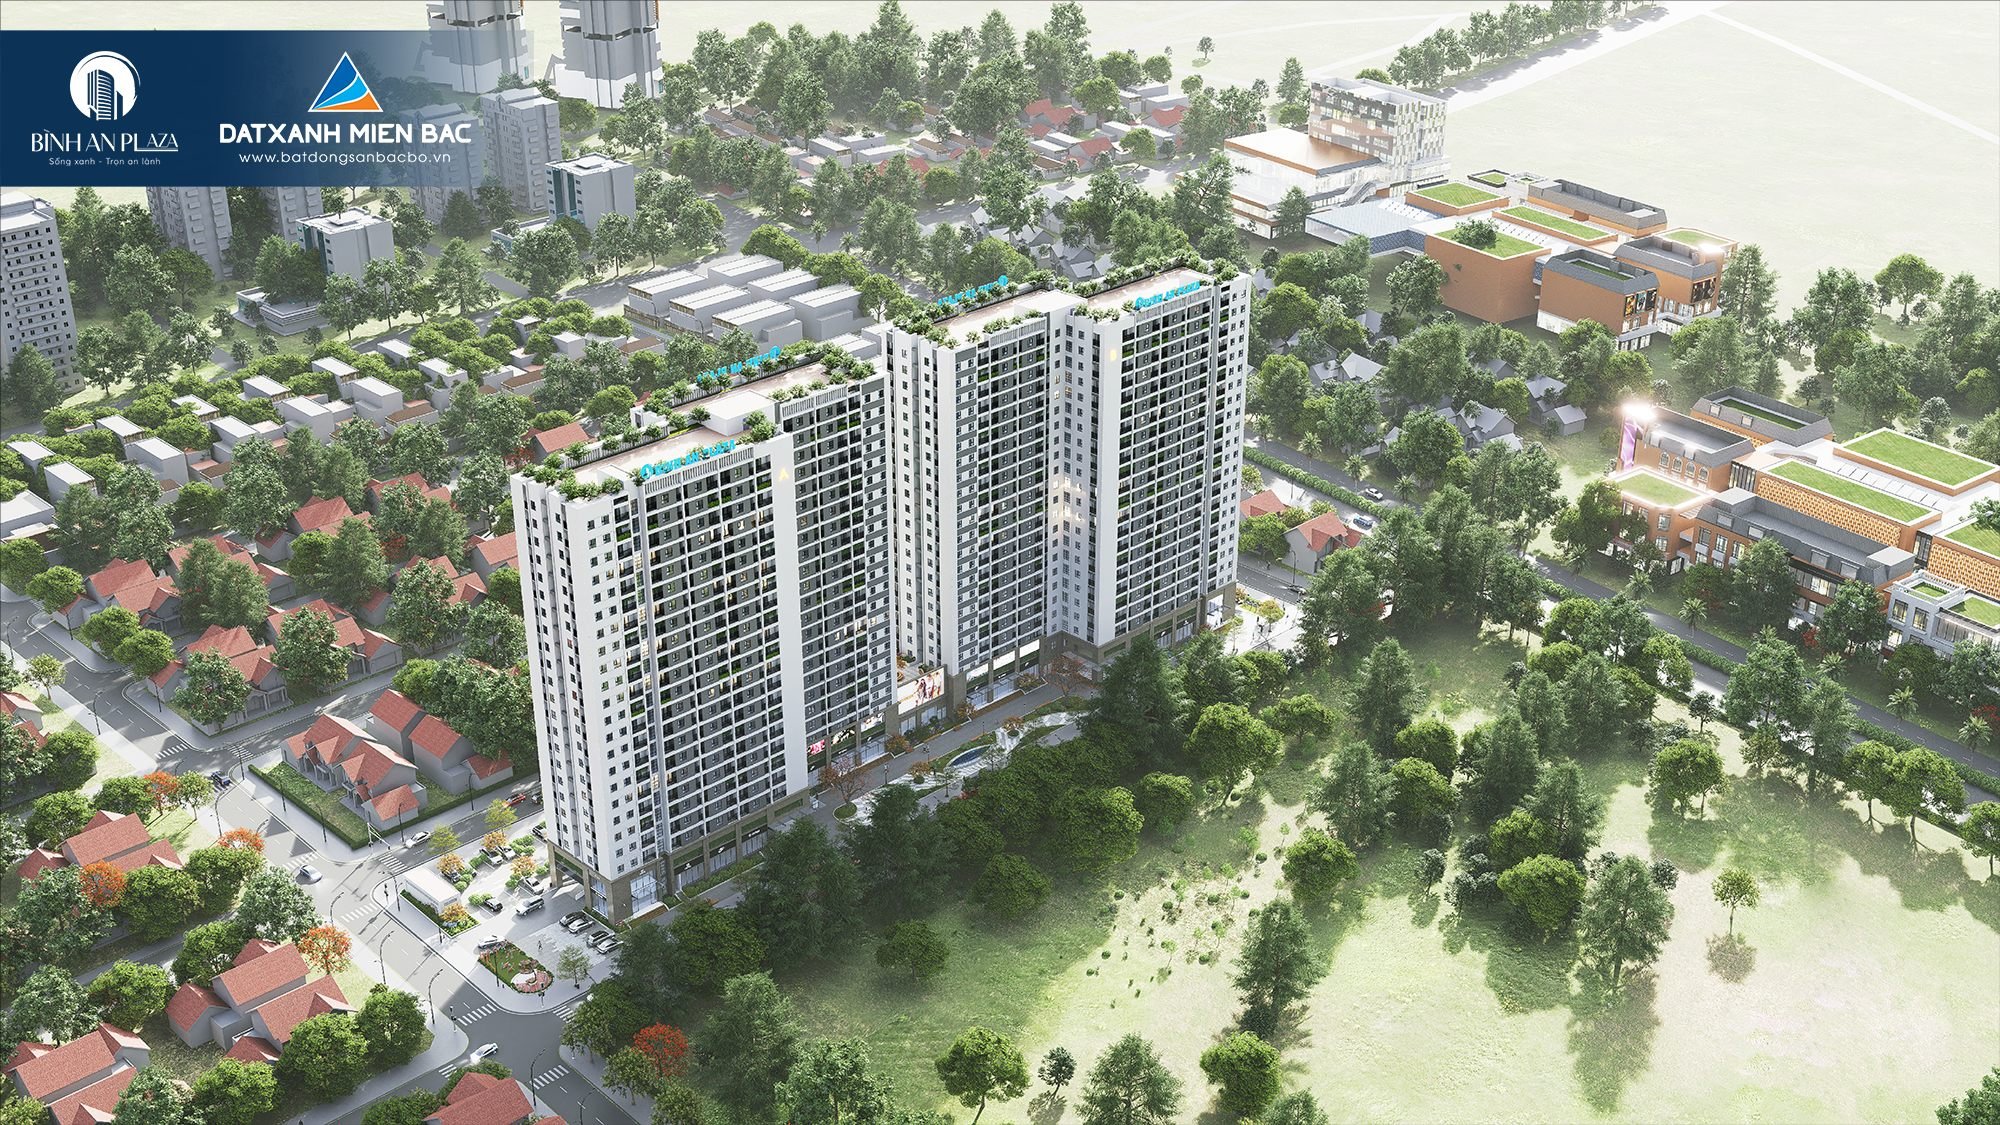 Đất Xanh Miền Bắc phân phối dự án Bình An Plaza Thanh Hóa. 0901.767696